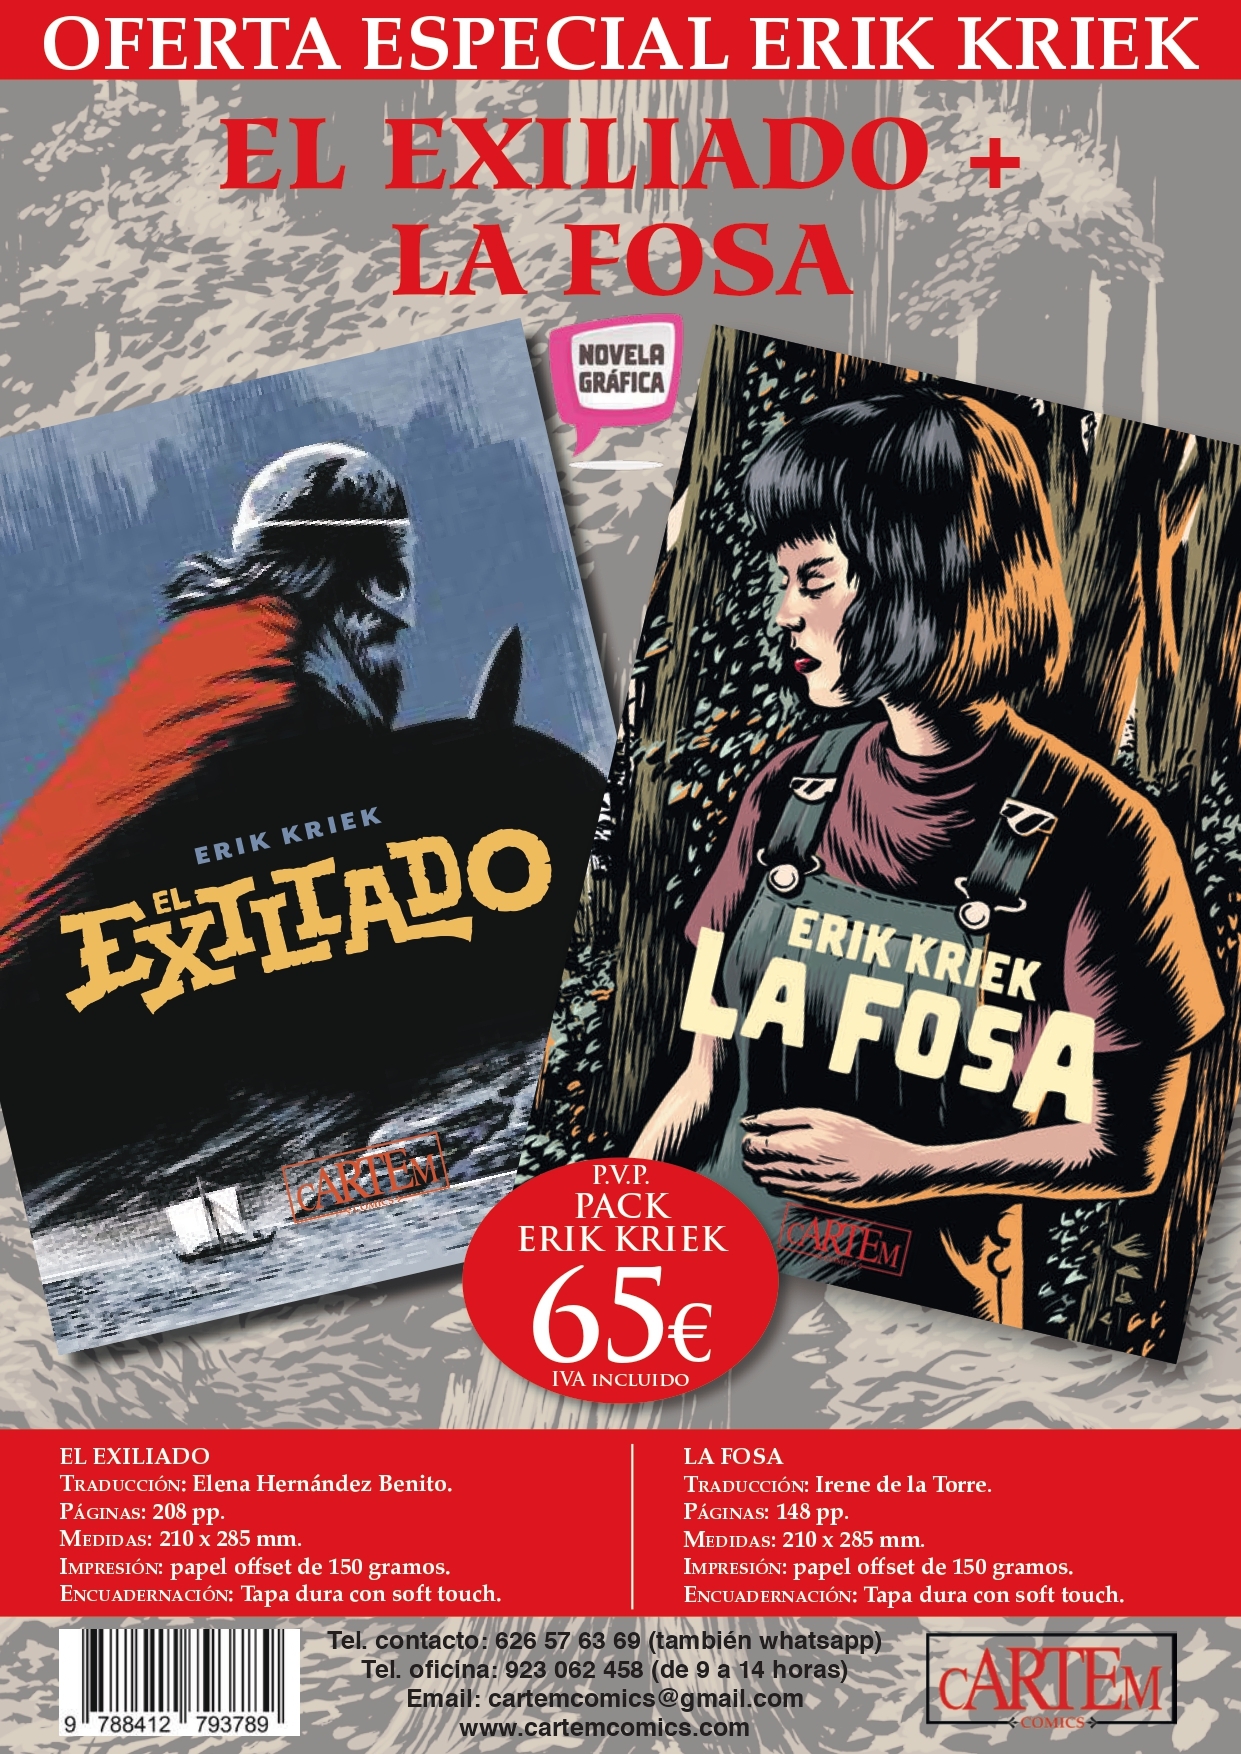 Pack Erik Kriek: Exiliado + La Fosa